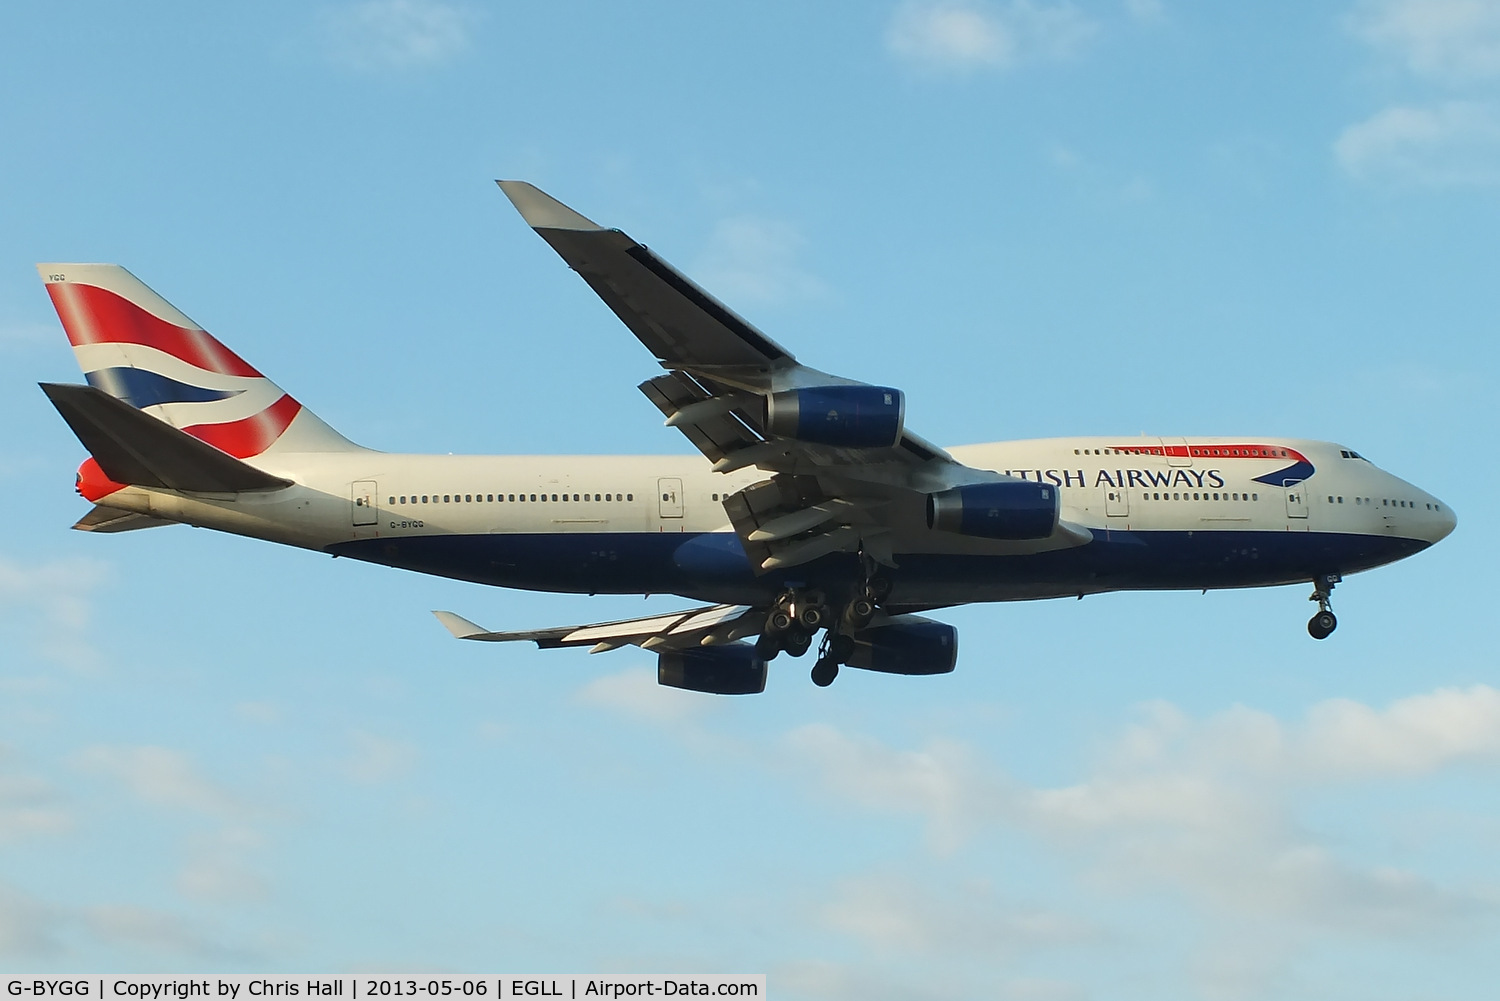 G-BYGG, 1999 Boeing 747-436 C/N 28859, British Airways